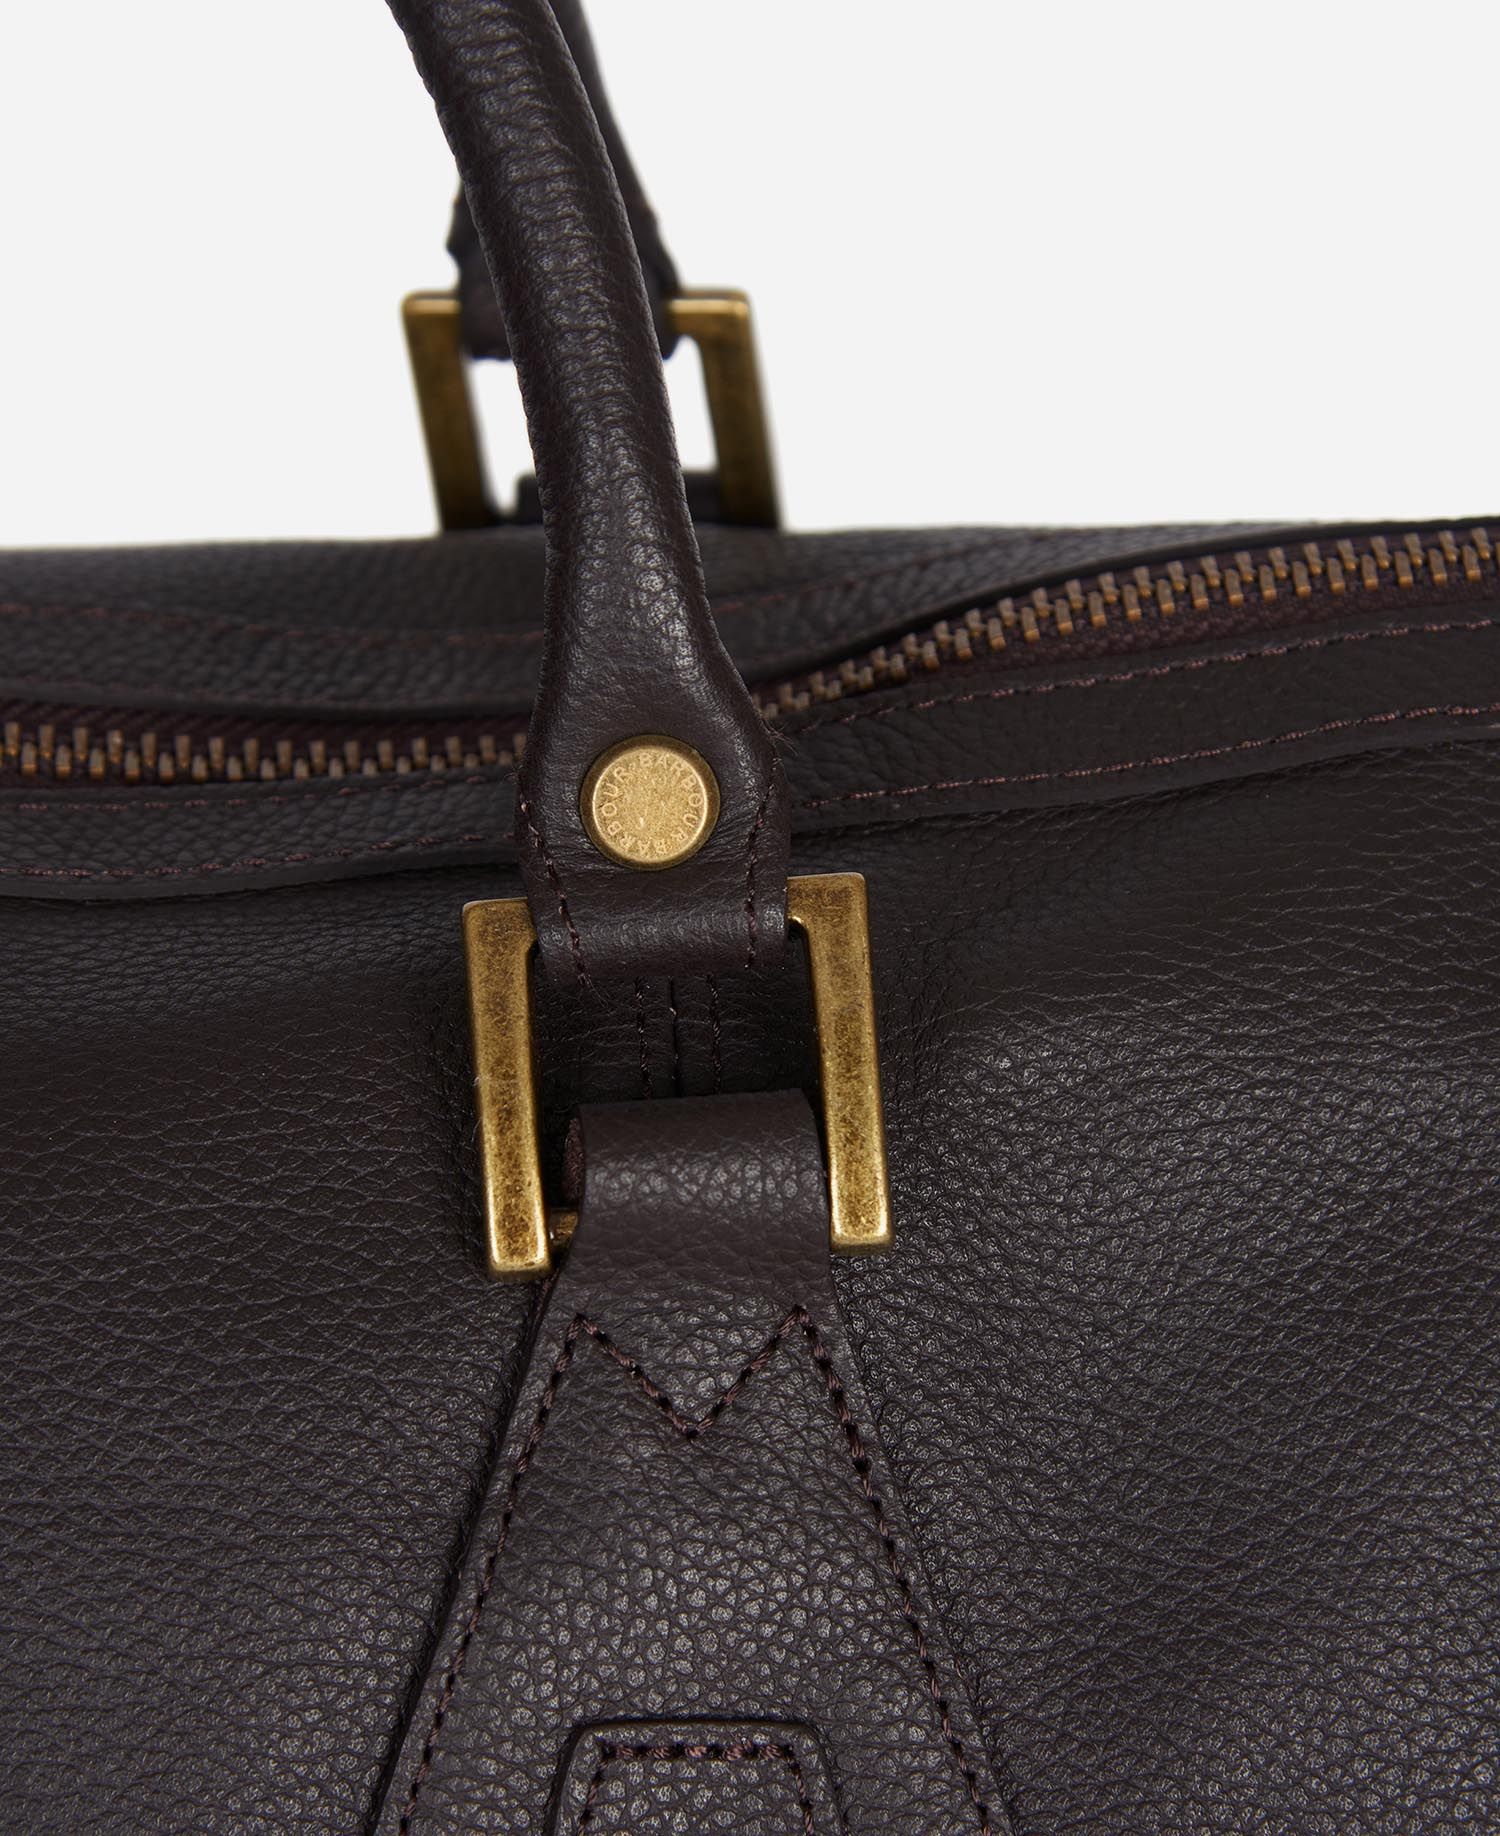 Barbour Leather Medium Travel Explorer Bag BR91  Brown